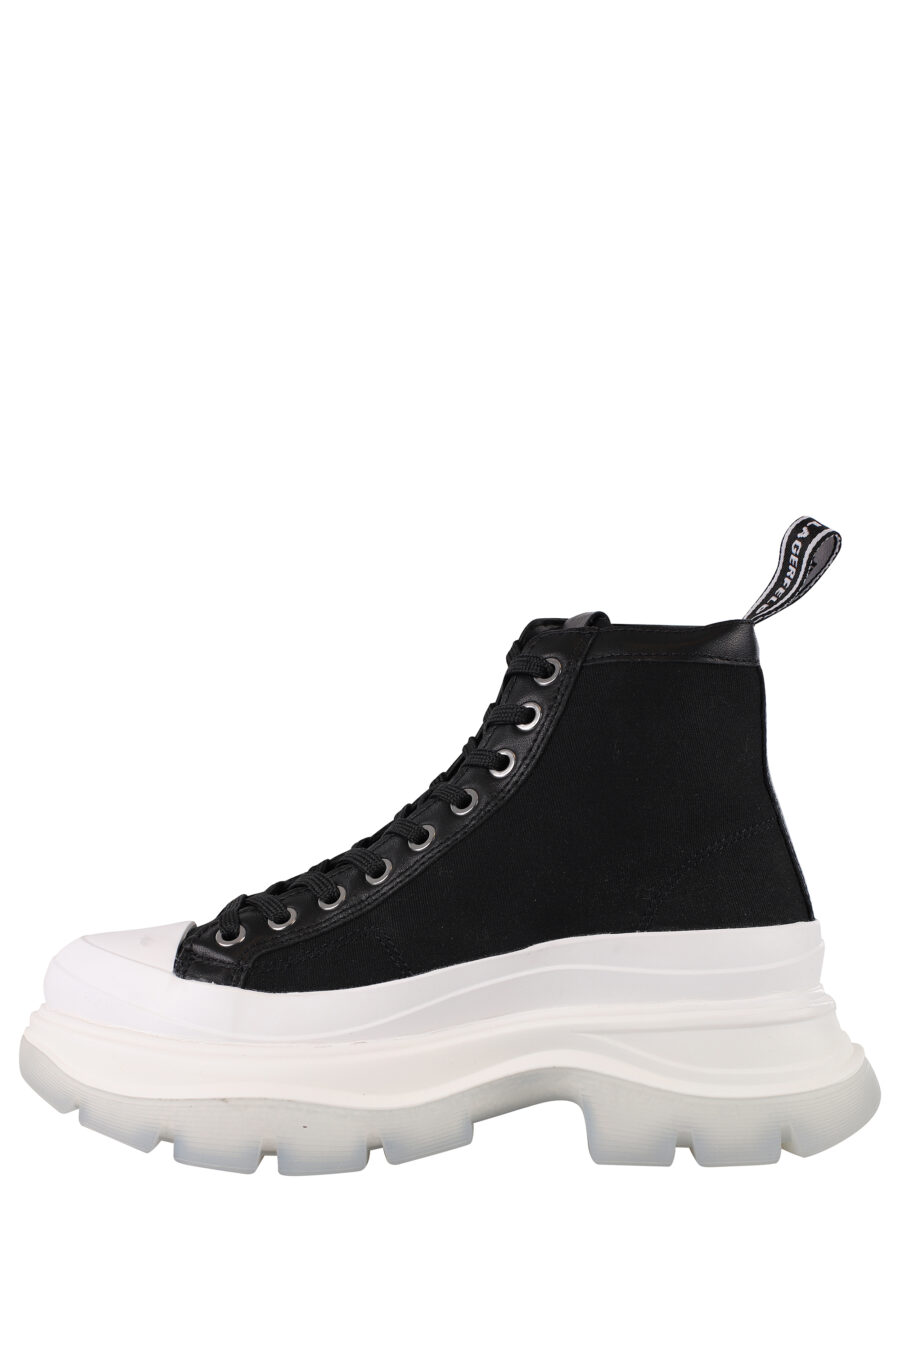 Zapatillas negras altas con suela blanca y cordones - IMG 1375